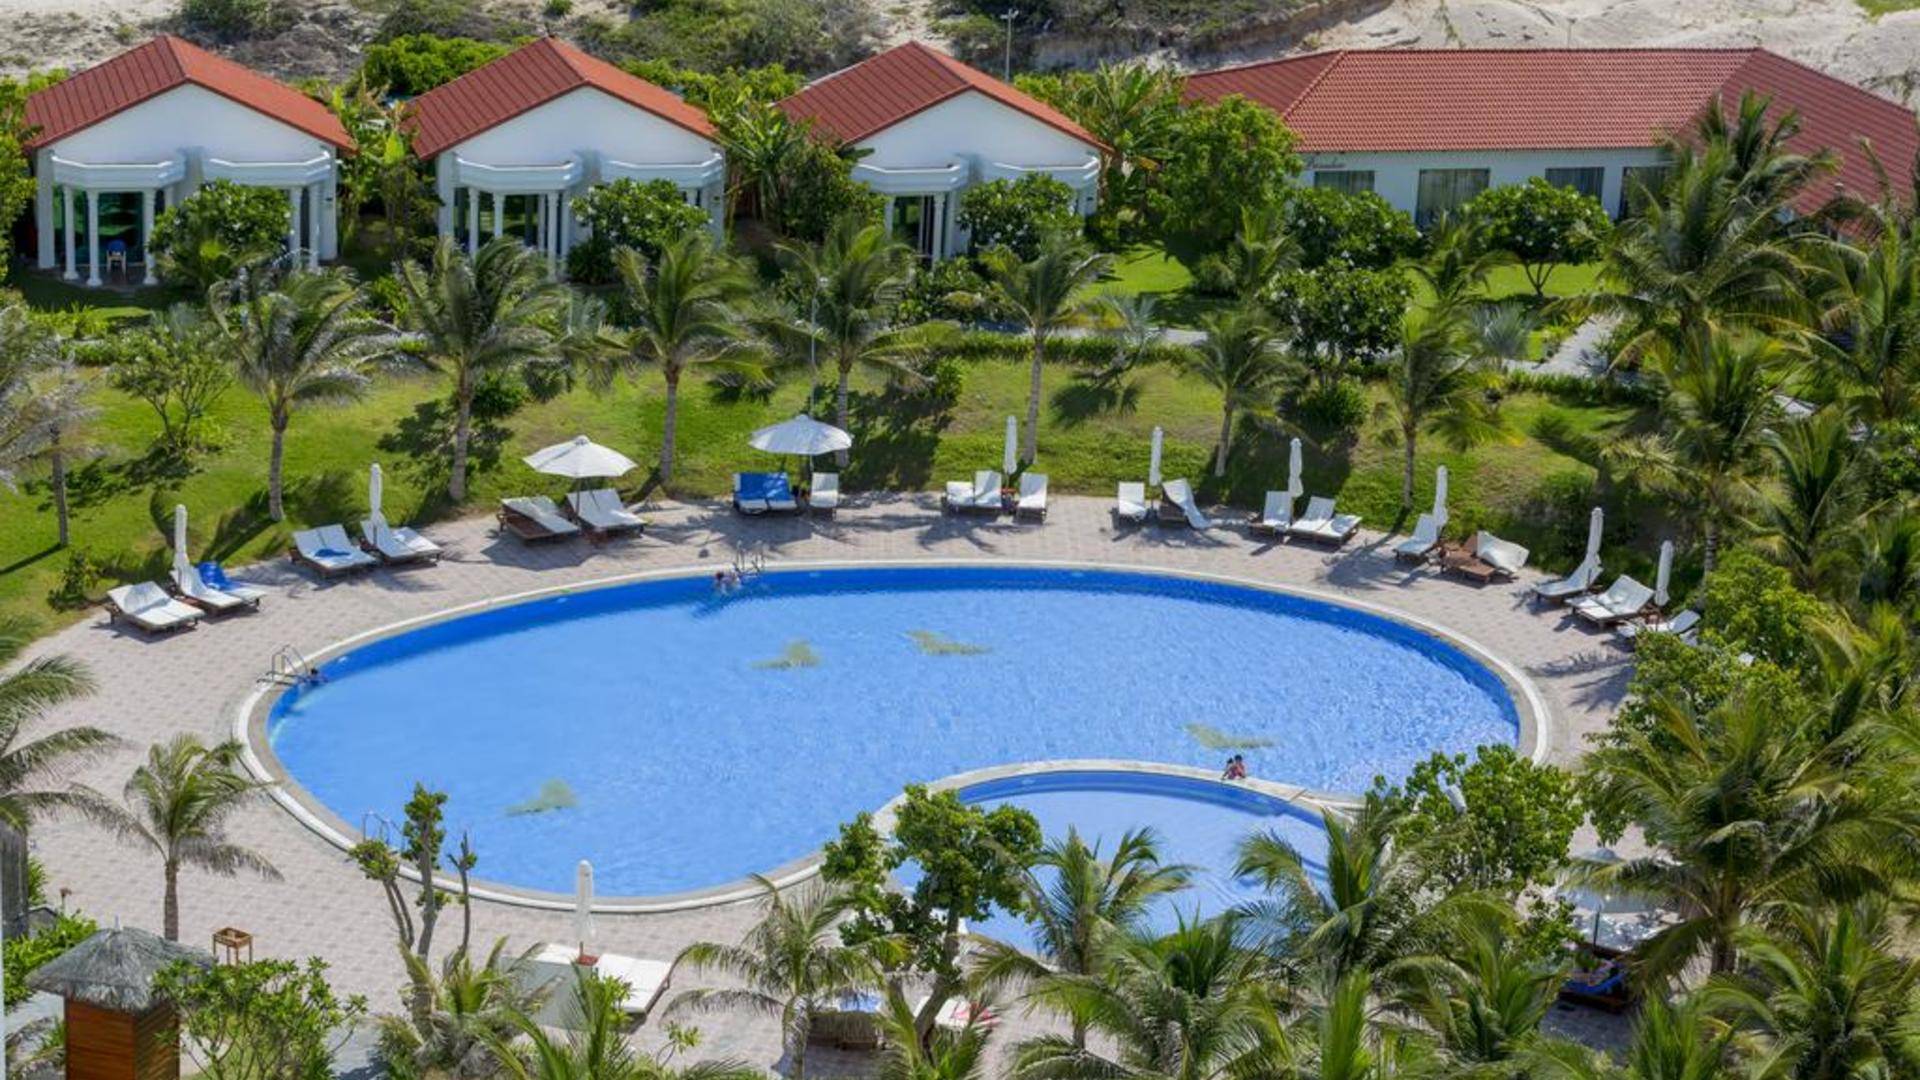 Dessole beach resort - nha trang (закрыт) 4* (вьетнам/провинция кханьхоа/нячанг). отзывы отеля. рейтинг отелей и гостиниц мира - hotelscheck.